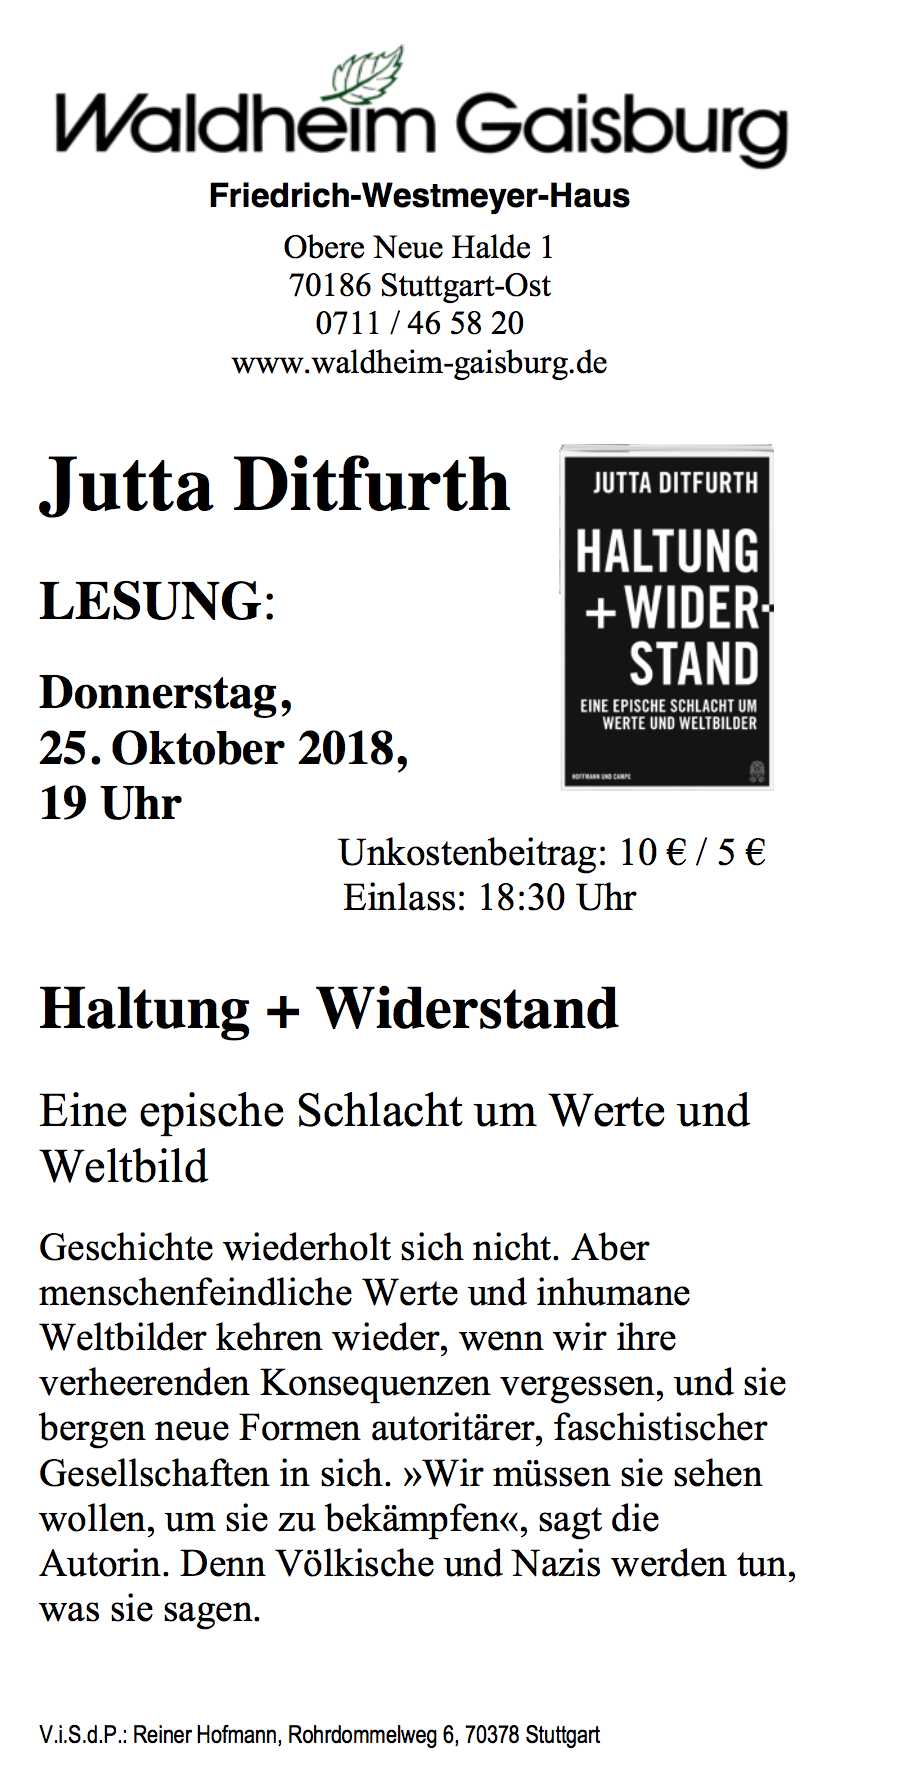 Do. 25.10.2018, STUTTGART, 19:00 Uhr, 
Jutta Ditfurth: »Haltung + Widerstand« Vortrag & Diskussion. 
Ort: Waldheim Gaisburg, Obere Neue Halde 1 70186 Stuttgart-Ost
Einlass: 18:30 Uhr